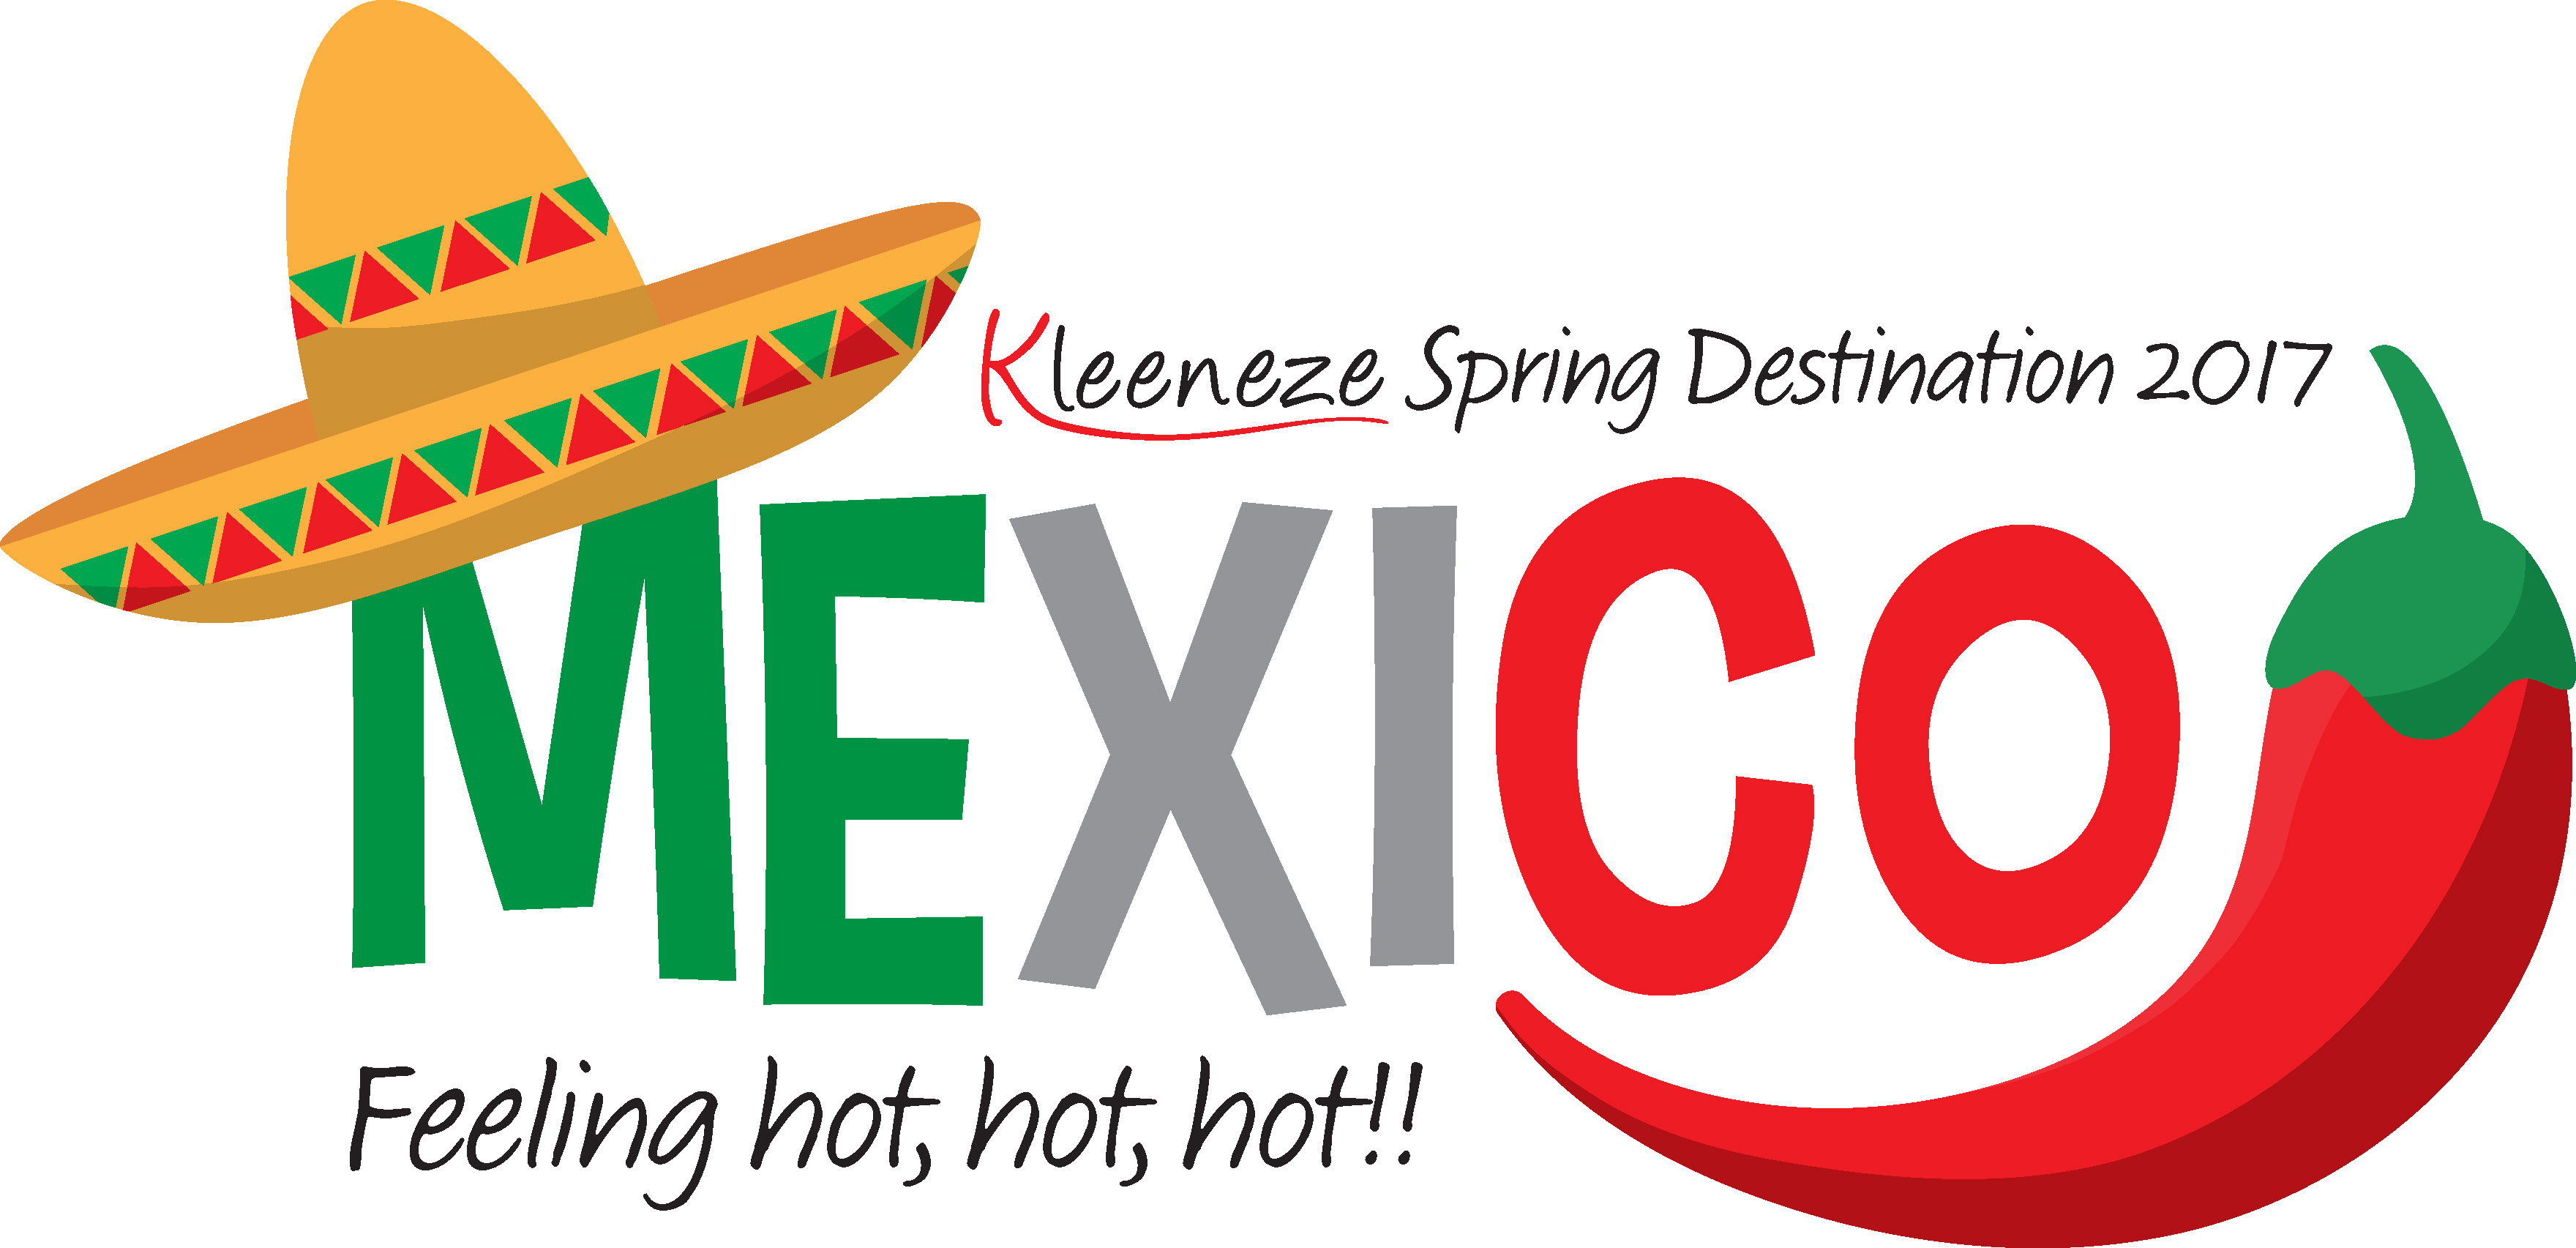 Kleeneze Spring Destination 2017 - Mexico. Downloads